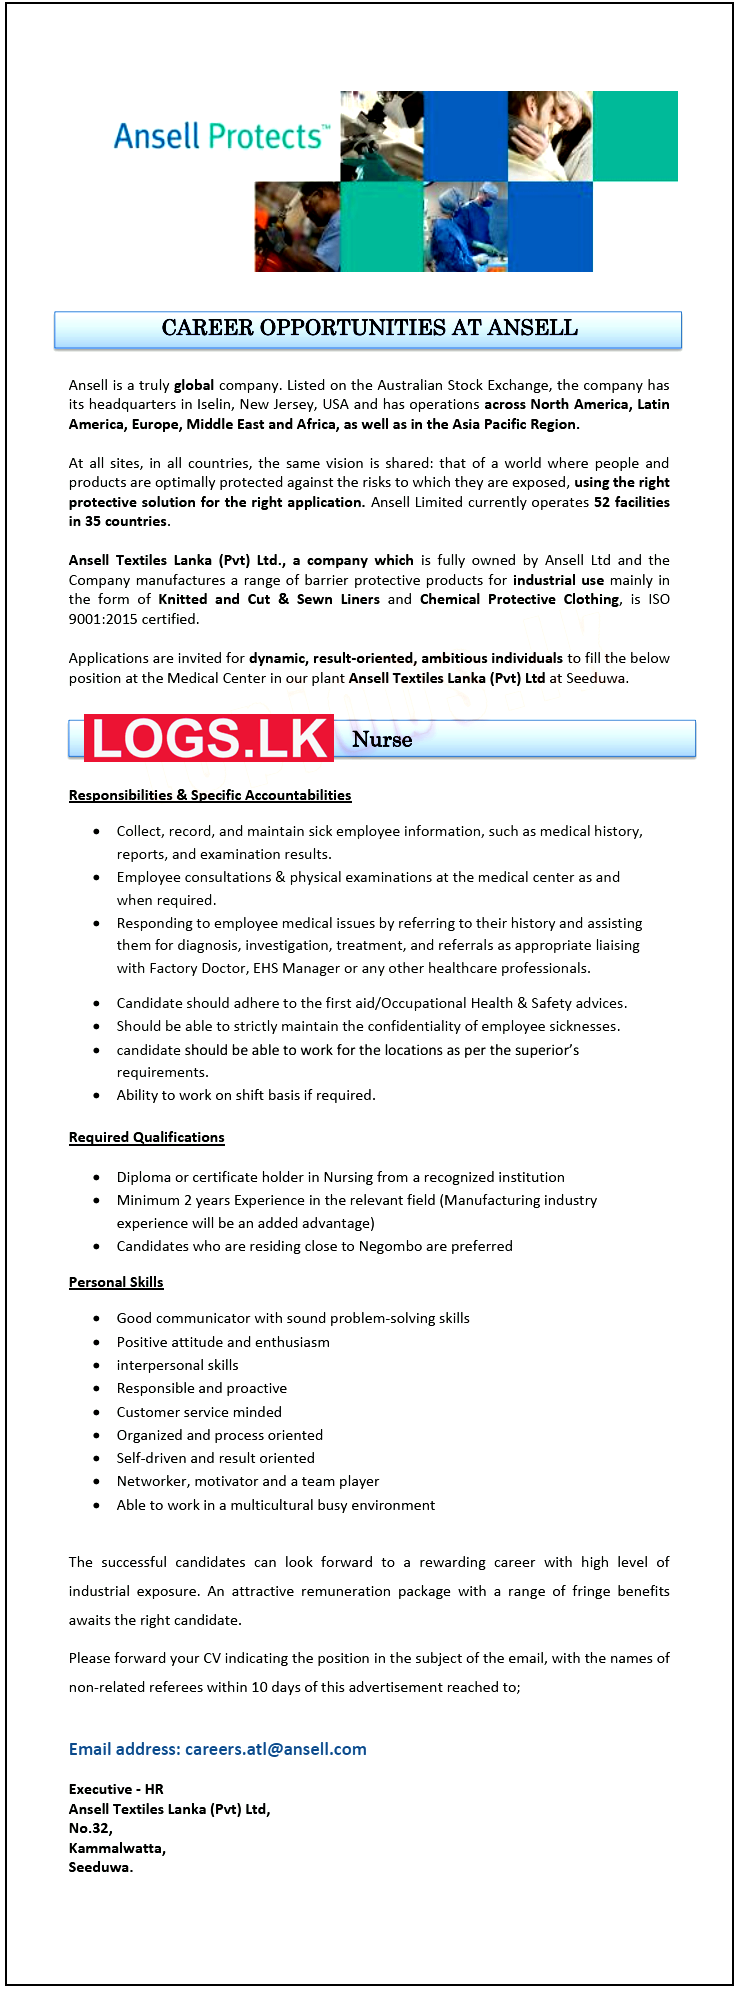 Nurse Job Vacancy at Ansell Textiles Lanka Job Vacancies Application, Details Download